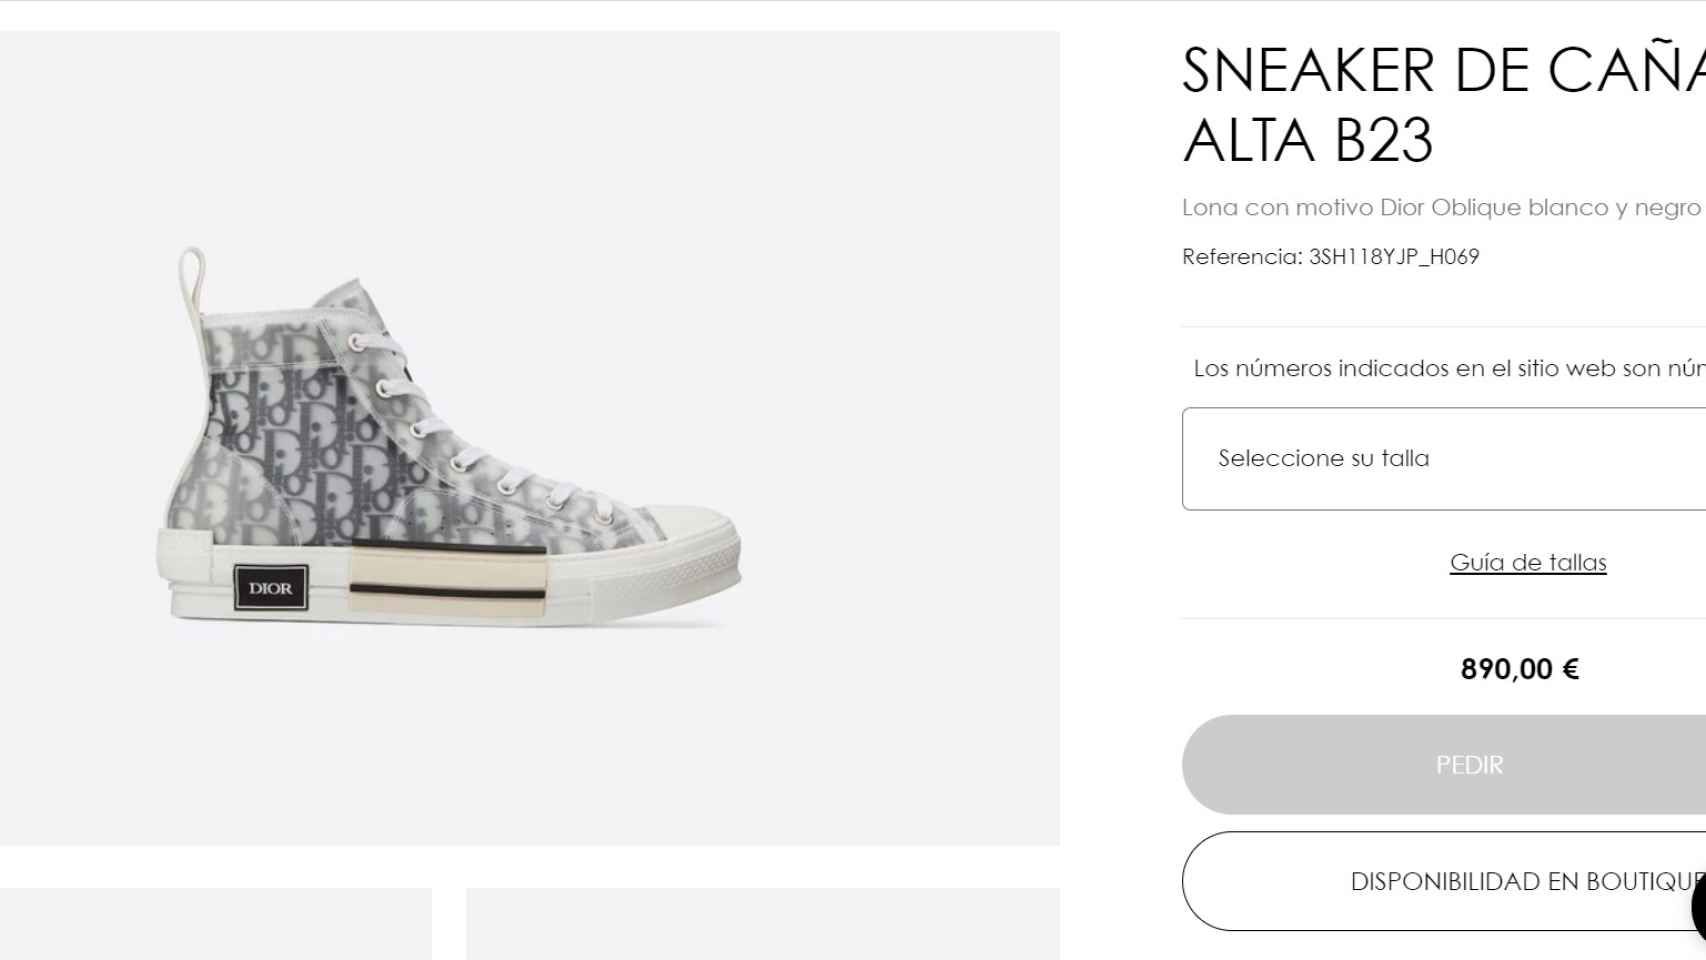 Sneakers de Dior que Mar Torres ha regalado a su nuevo novio.